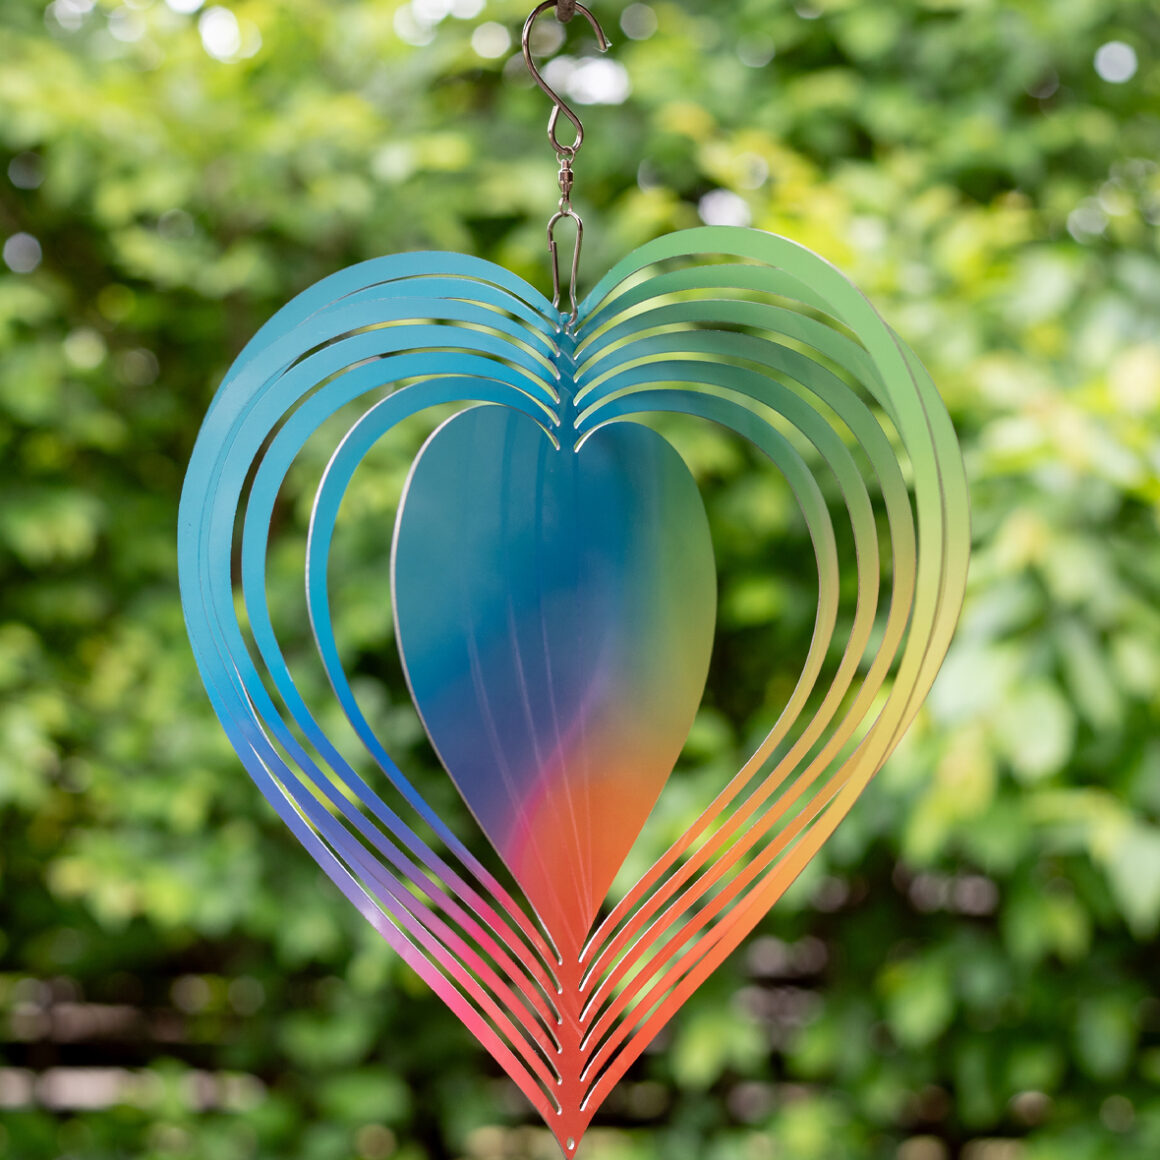 Háttérben homályos fák láthatóak. Egy szív alakú fém szélforgó látható, mely szivárvány színekben pompázik. Közepén egy nagyobb szív felület található, erre akár fotó is kerülhet.